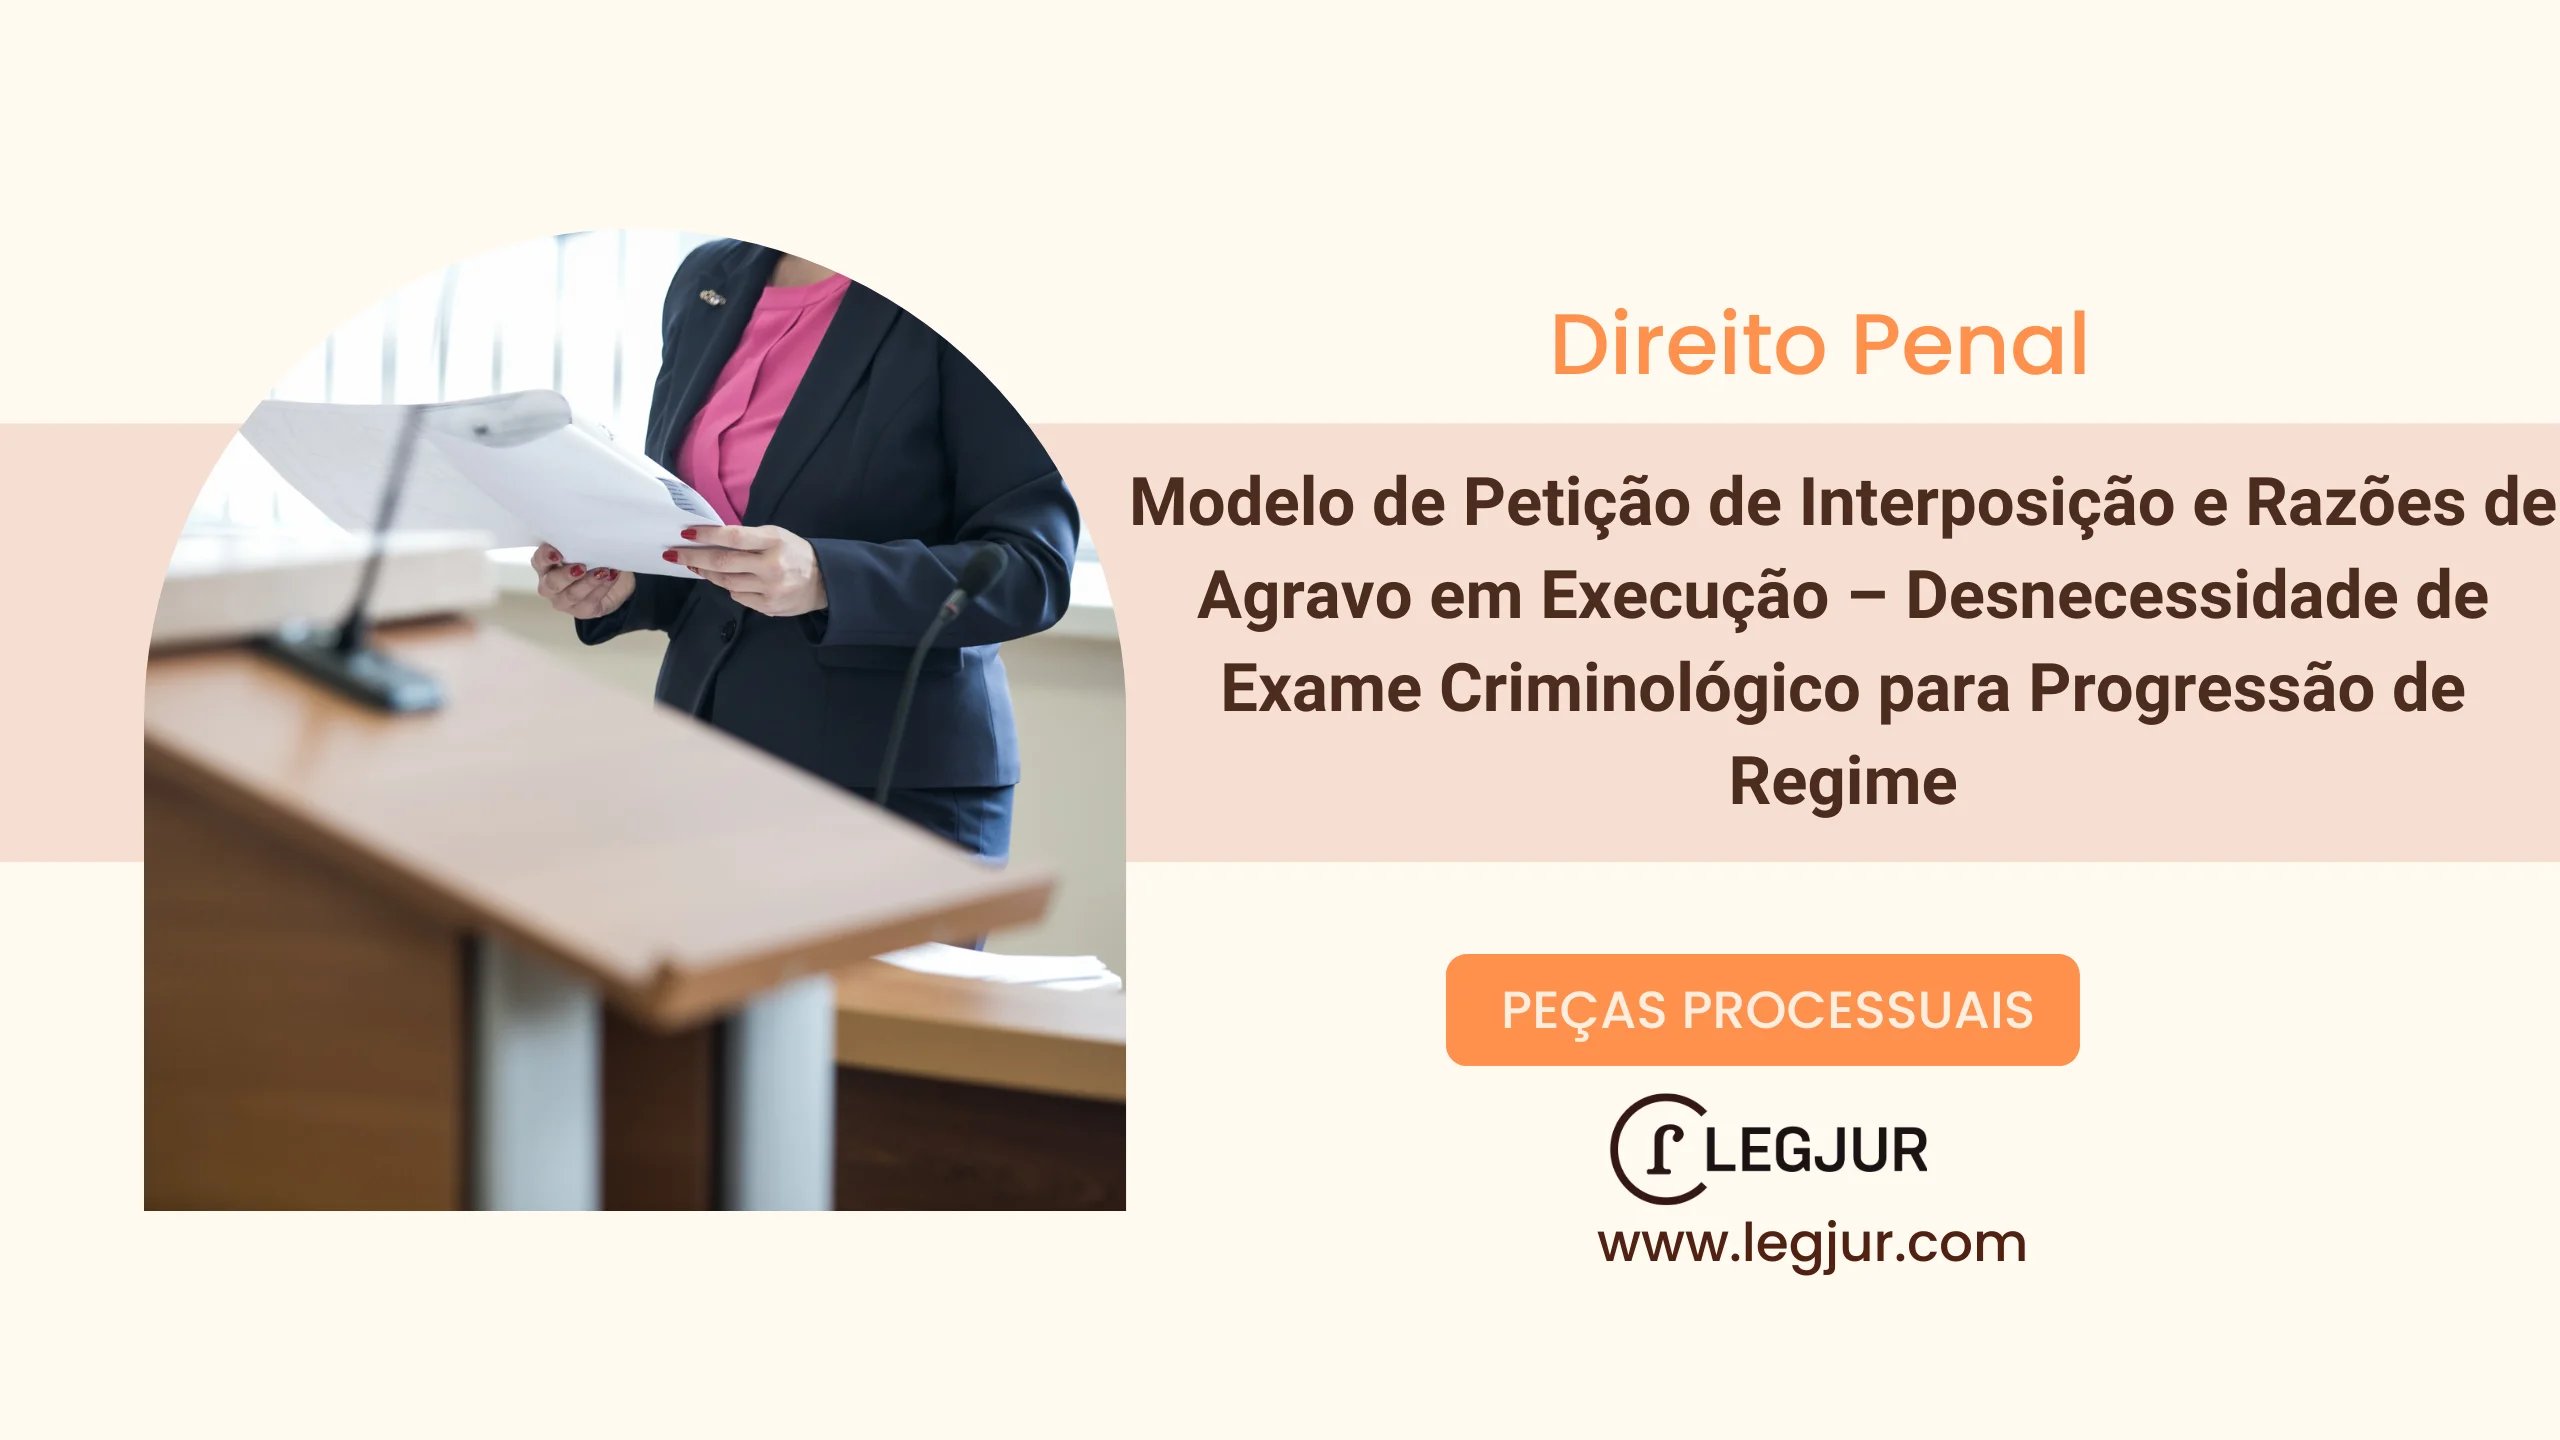 Modelo de Petição de Interposição e Razões de Agravo em Execução – Desnecessidade de Exame Criminológico para Progressão de Regime